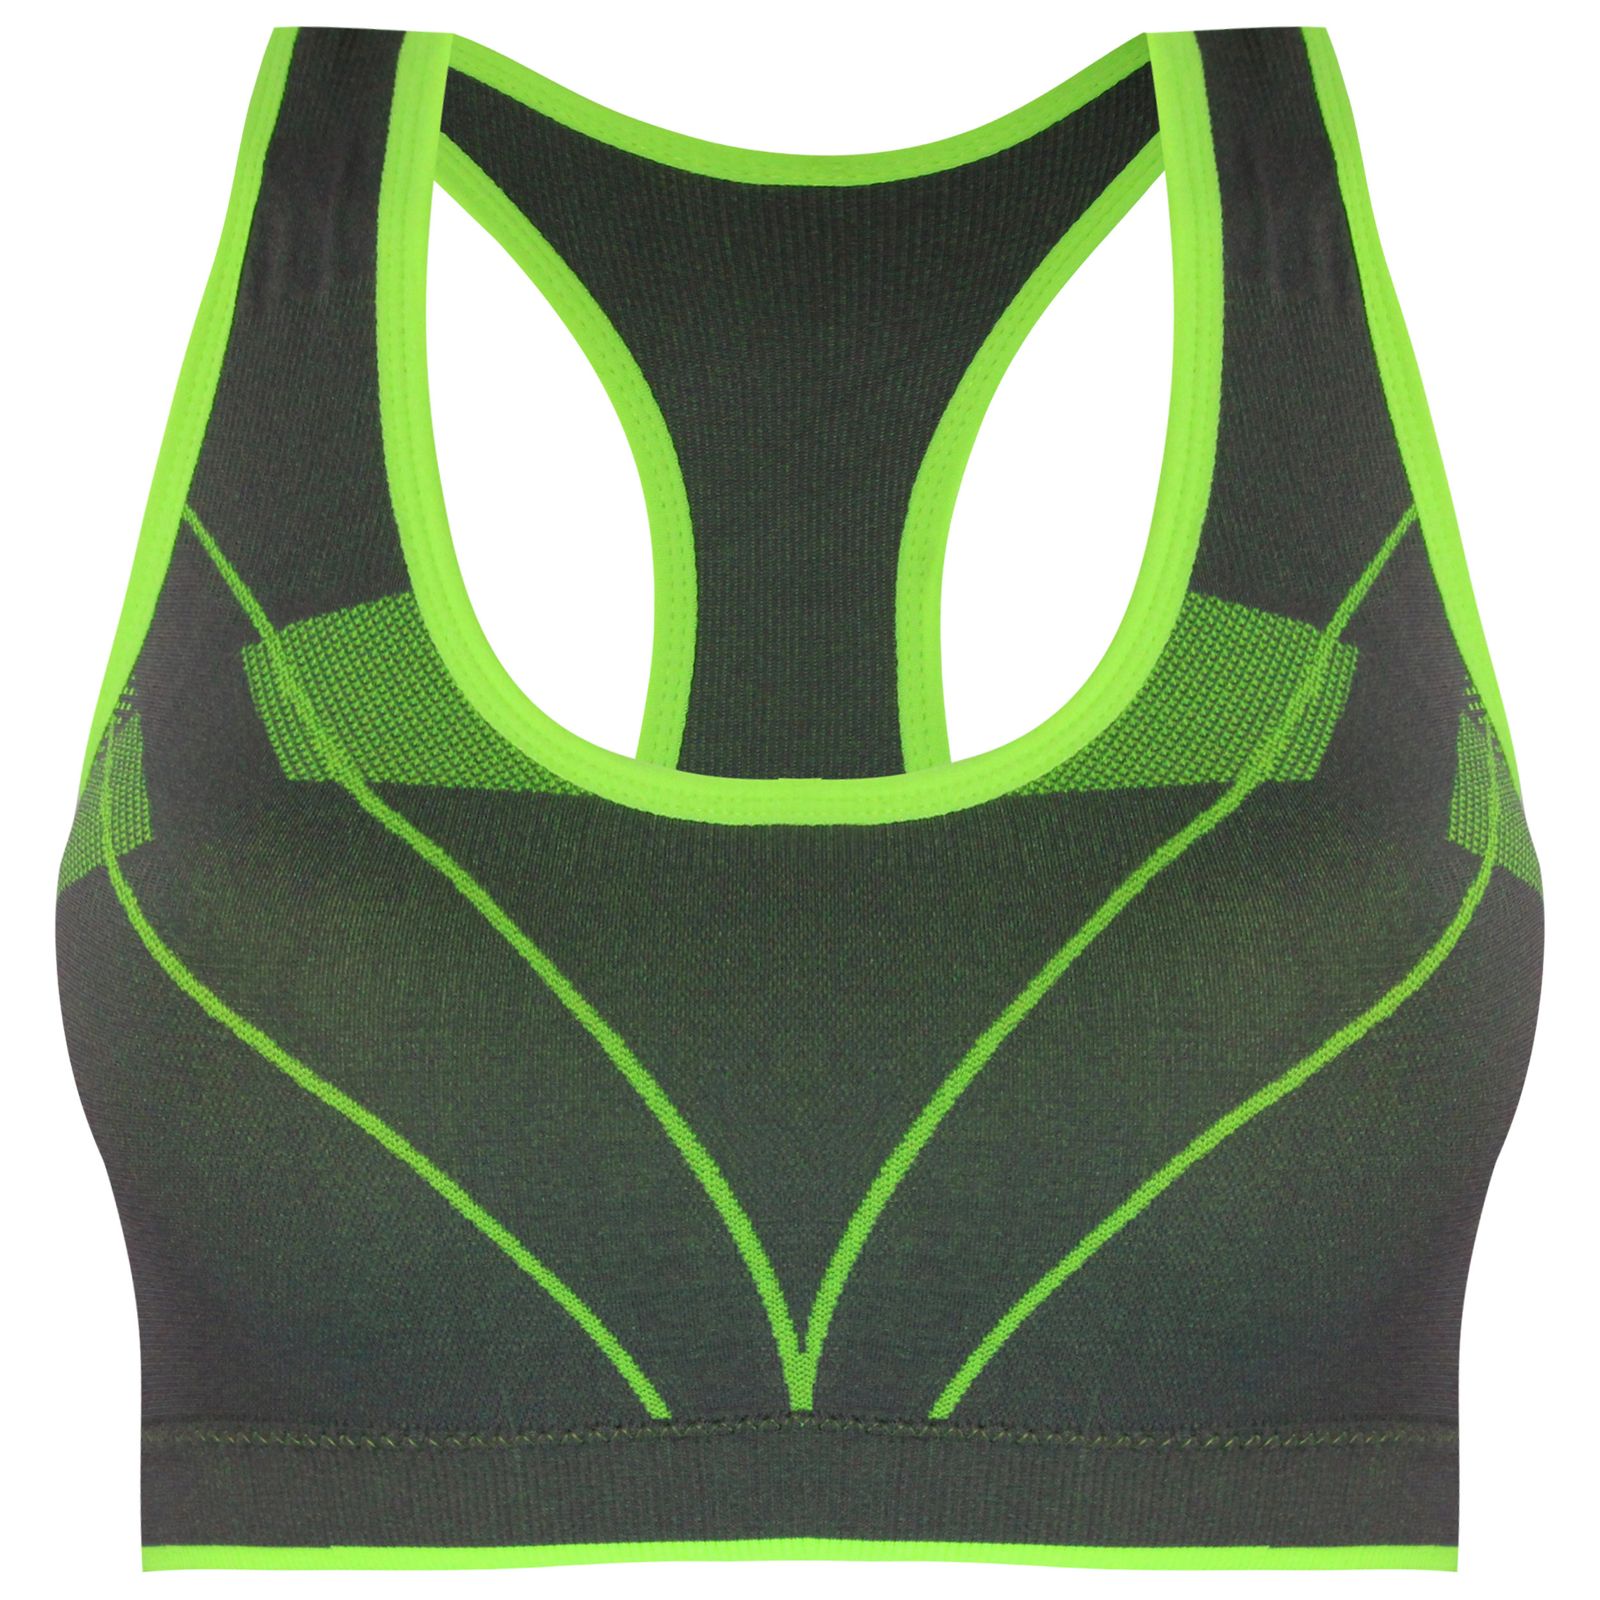 نیم تنه ورزشی زنانه ماییلدا مدل 3784-G رنگ سبز فسفری